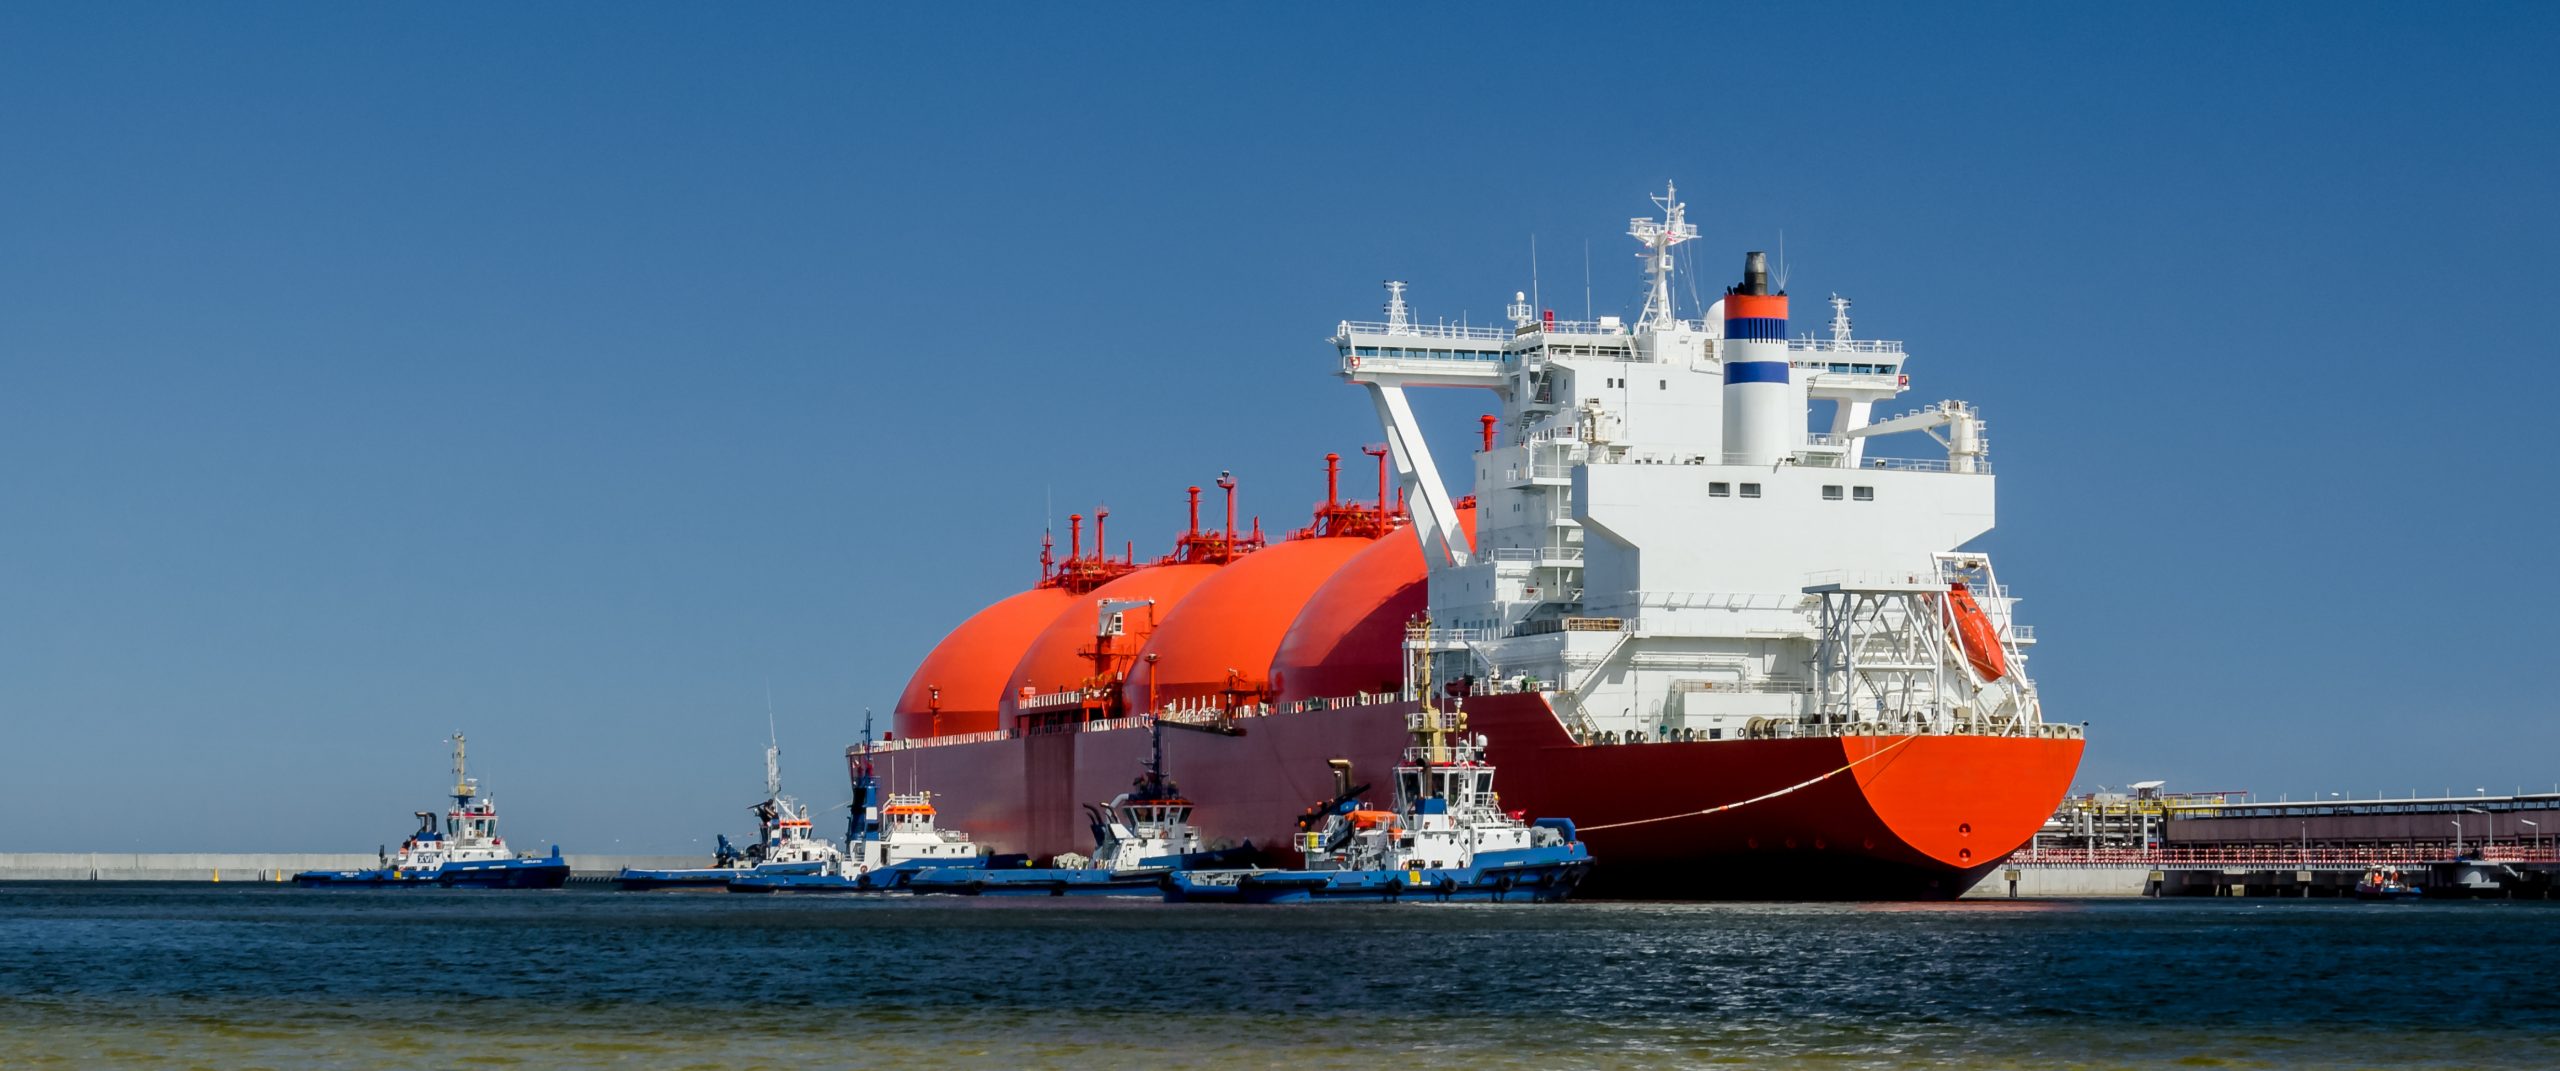 Tankowiec LNG w Gazoporcie w Świnoujściu. Fot. Shutterstock